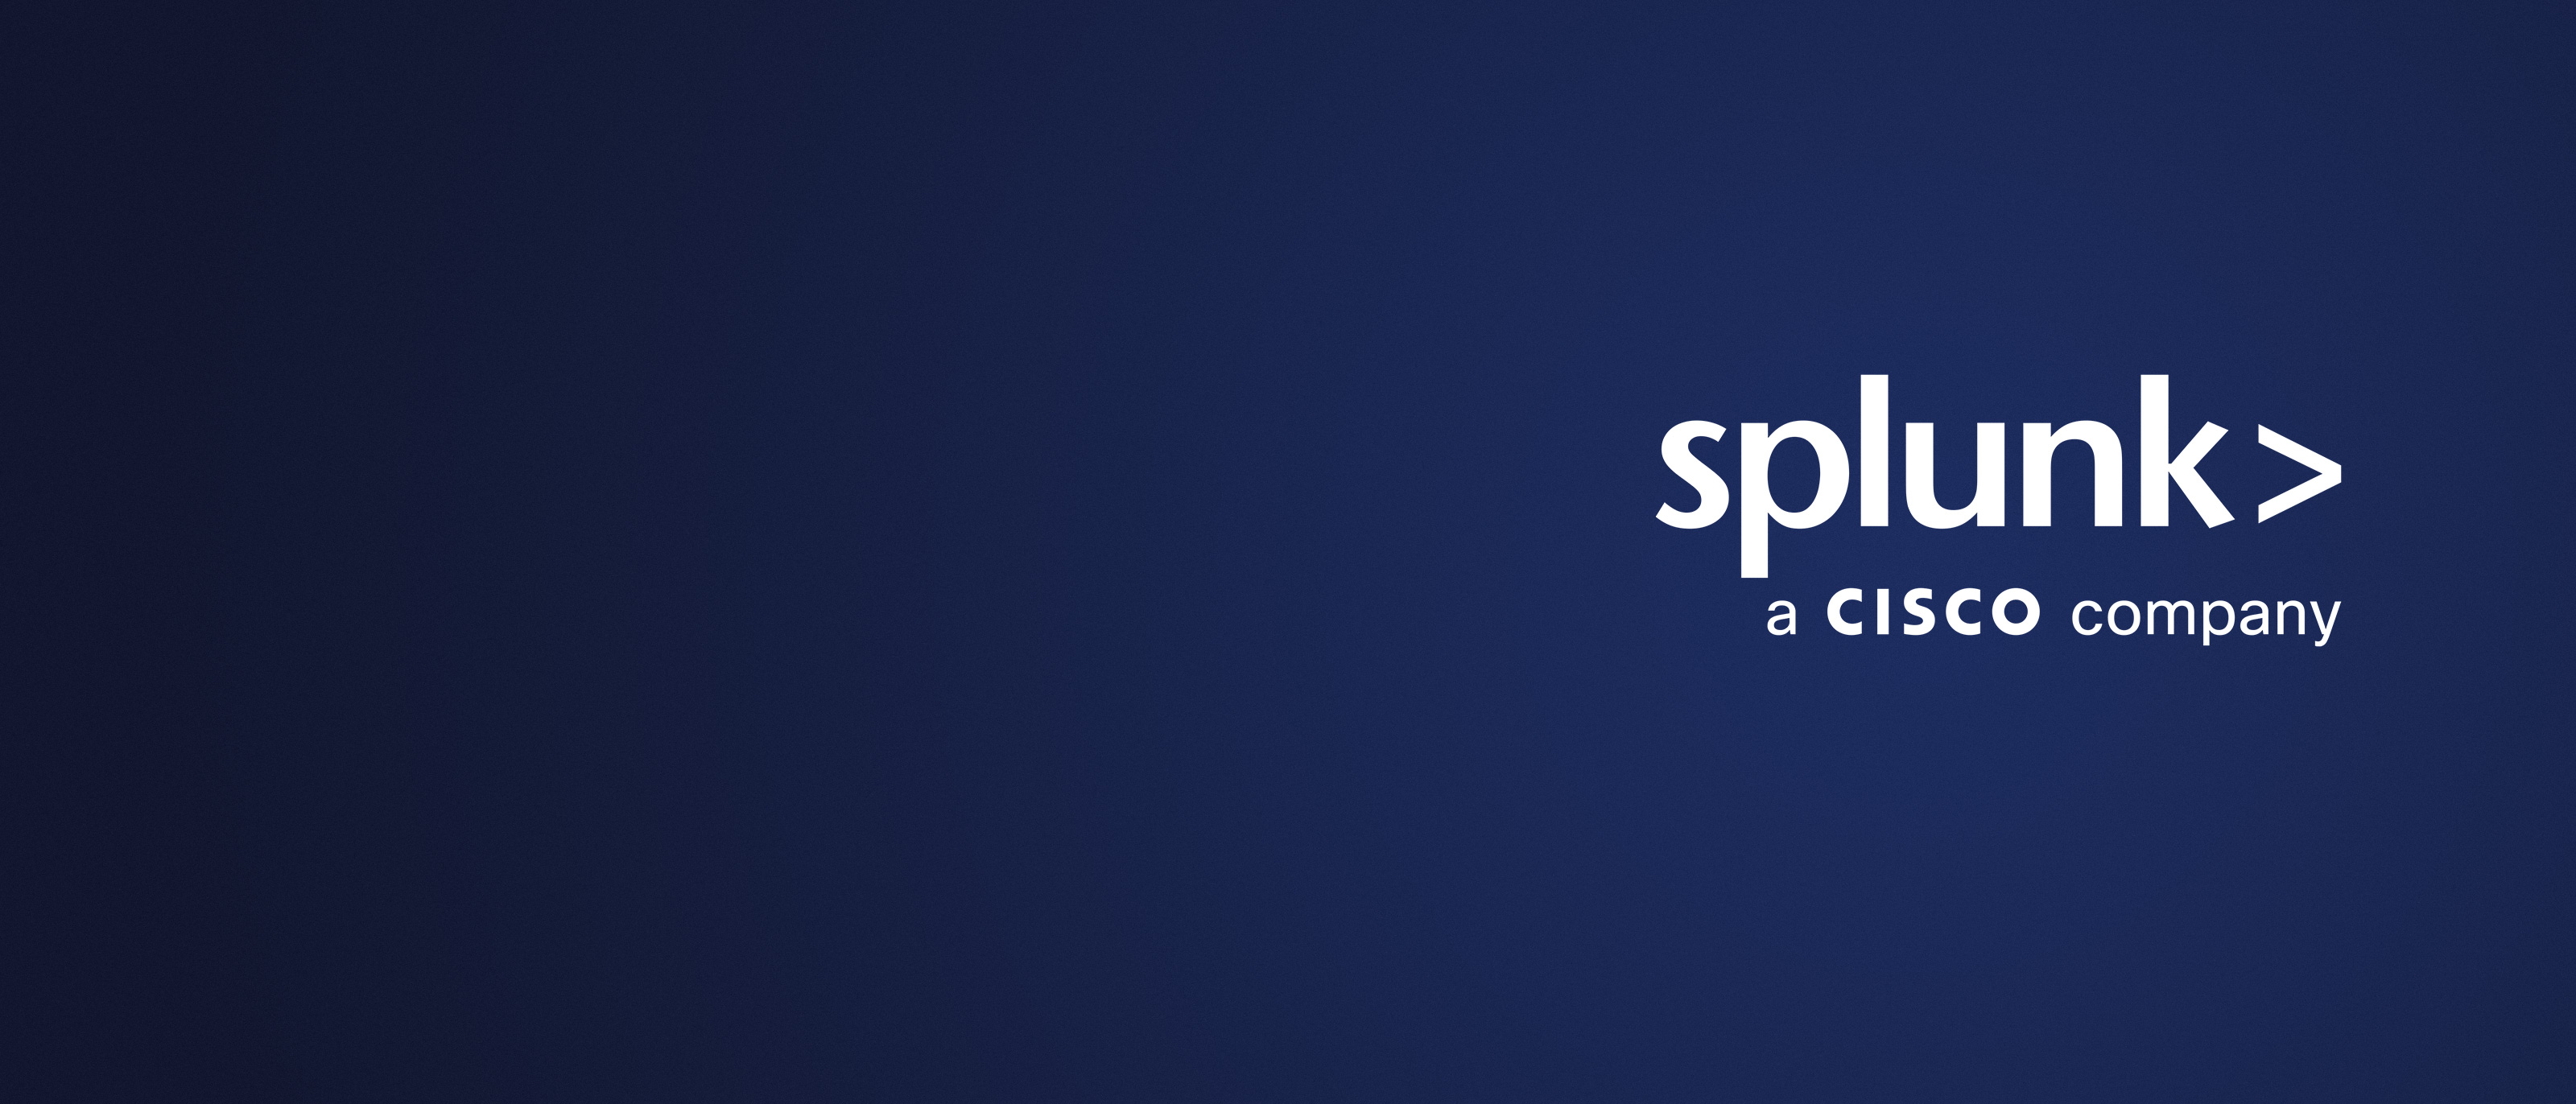 Splunk 社がシスコの傘下に。このメリットを活かすチャンスです。